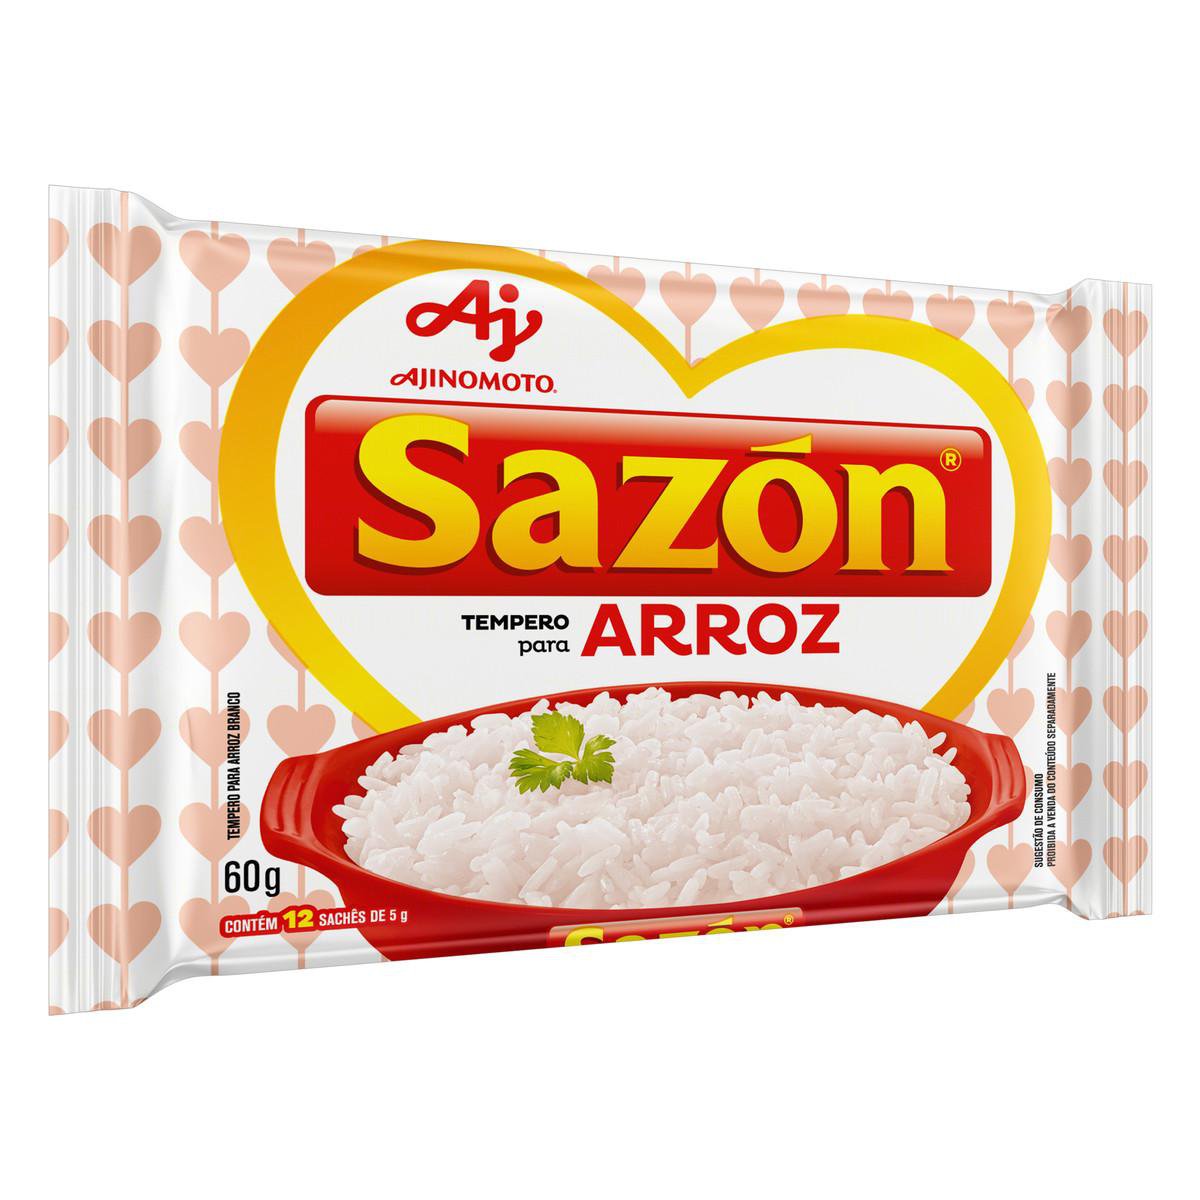 AJINOMOTO - Sazón - Assaisonnement pour riz - VENTE FINALE - EXPIREE ou PROCHE DE L'EXPIRATION